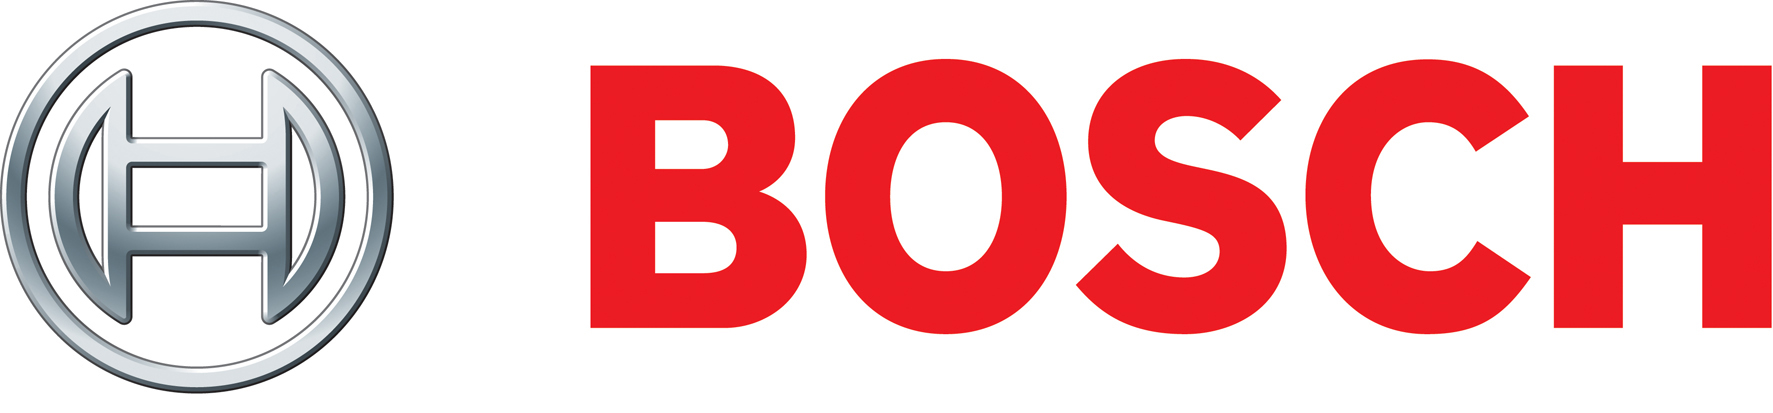 Bosch Logos
